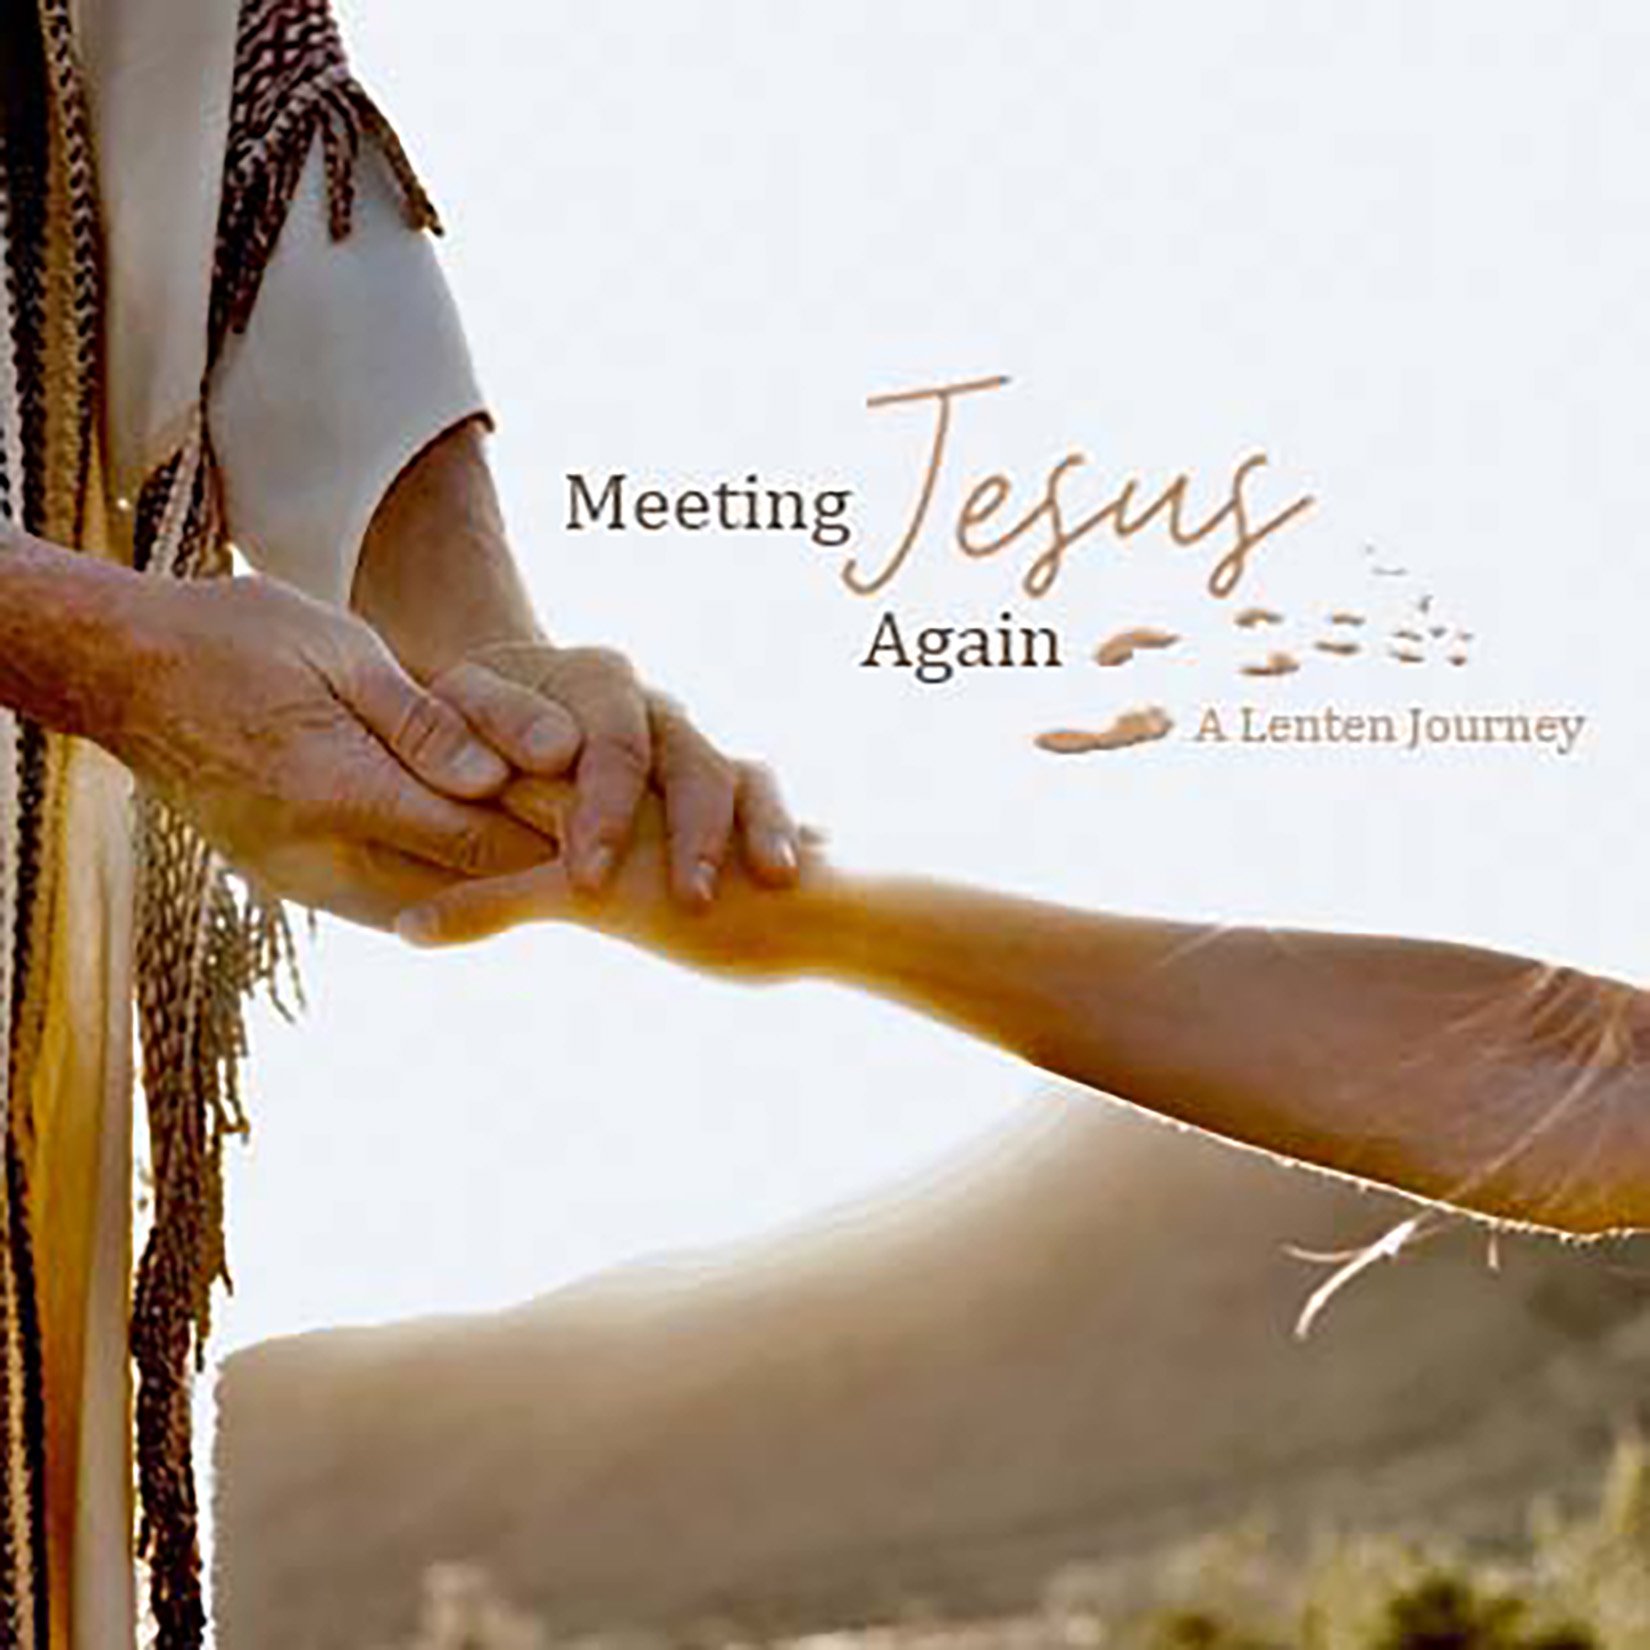 Meeting Jesus Again